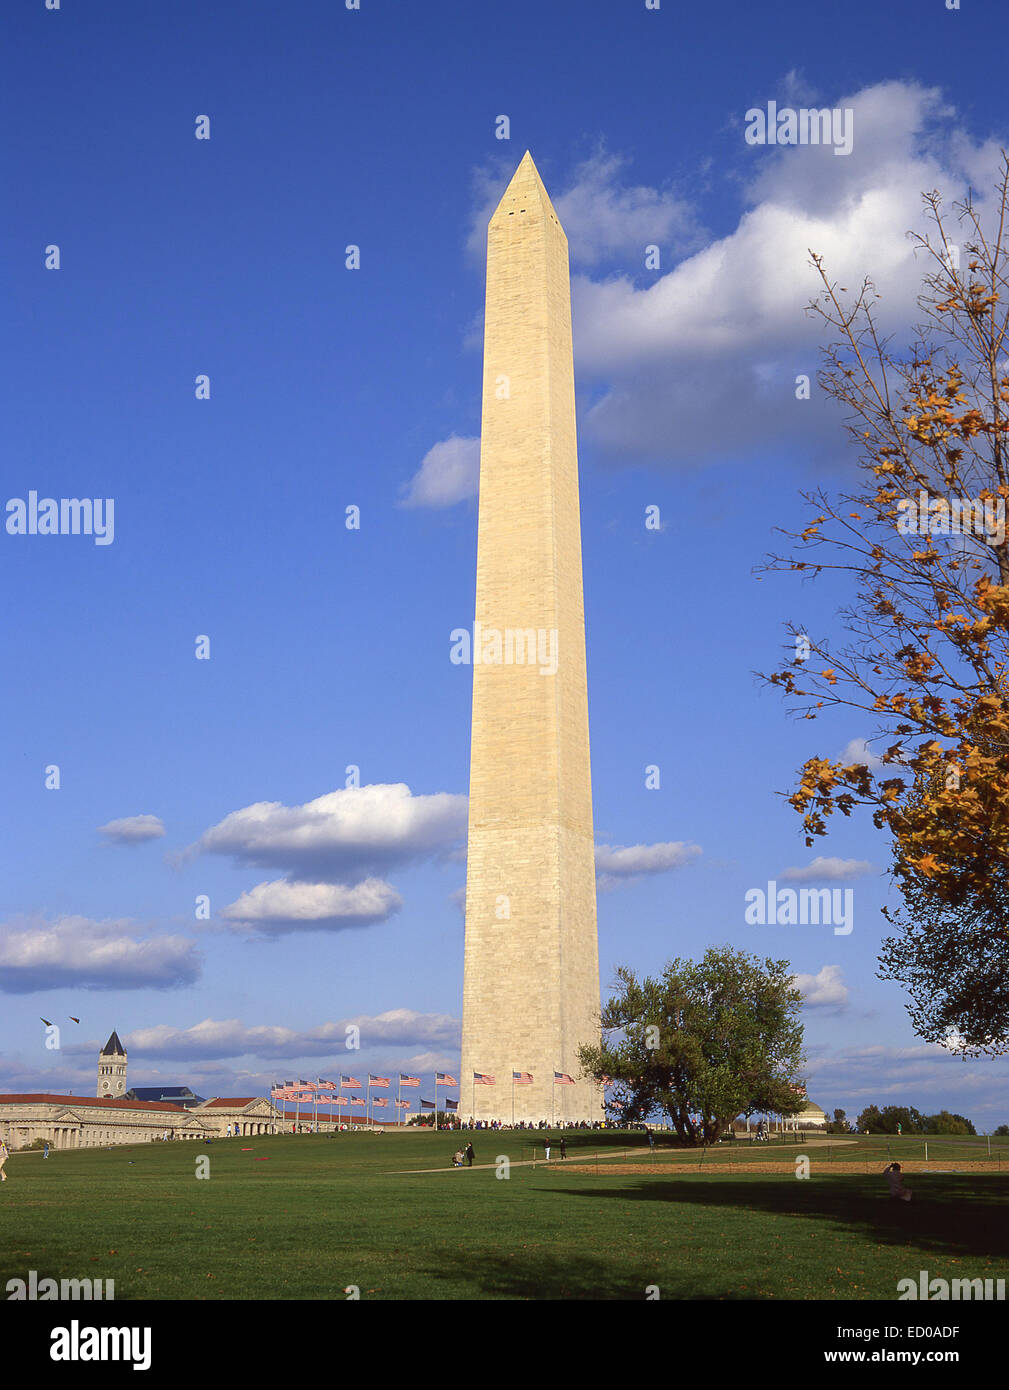 Washington Monument, National Mall, Washington DC, United States of America Stock Photo